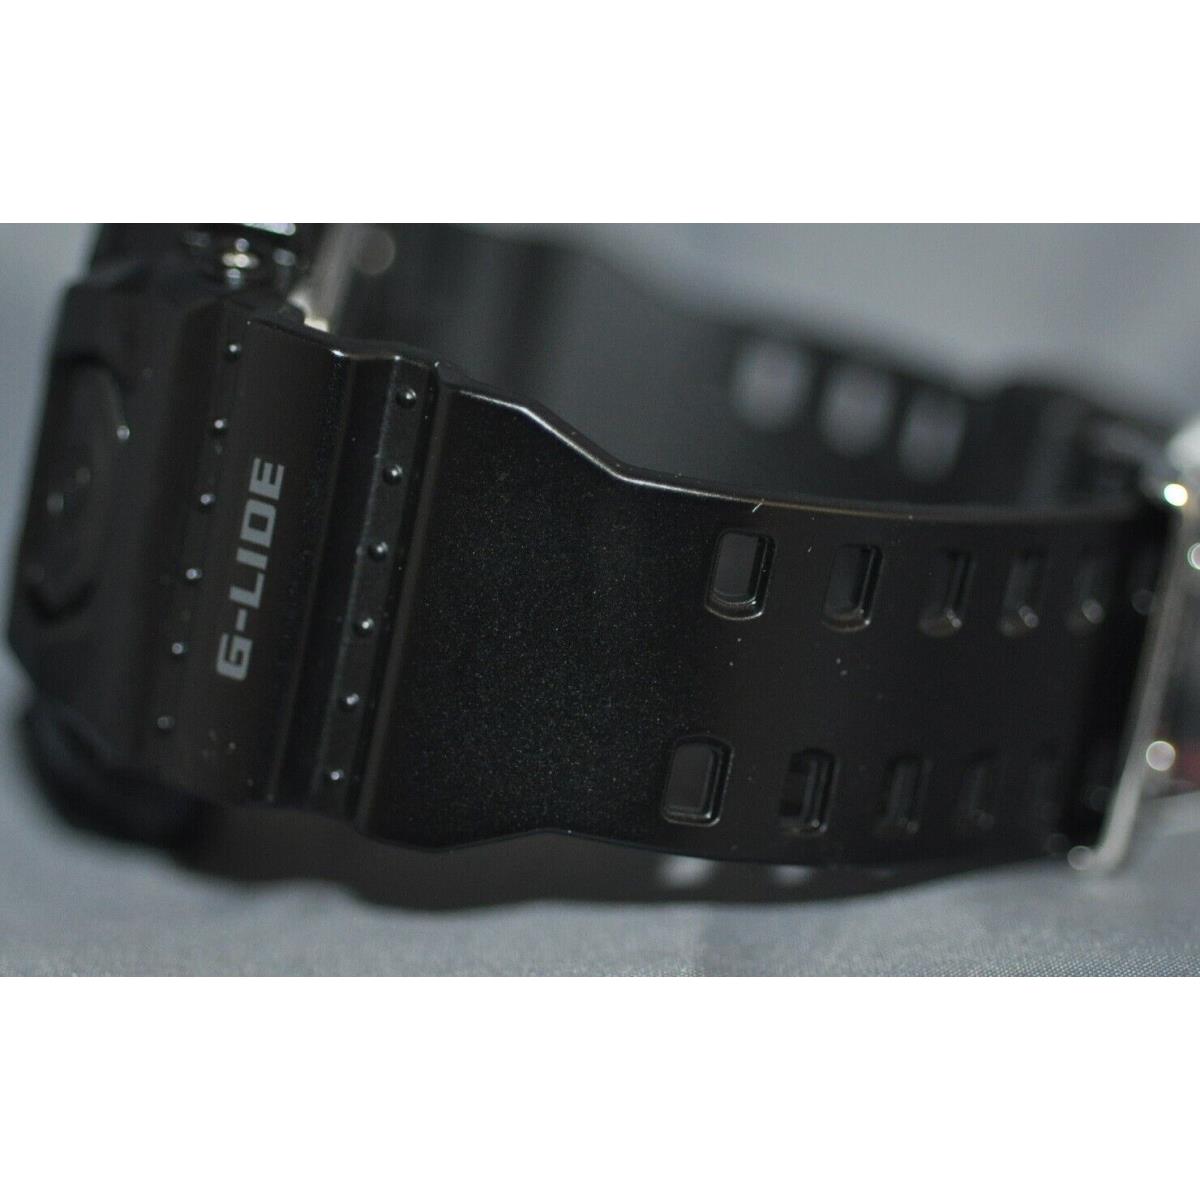 Casio G-shock Digital Dial Black Rubber Watch GLS8900-1